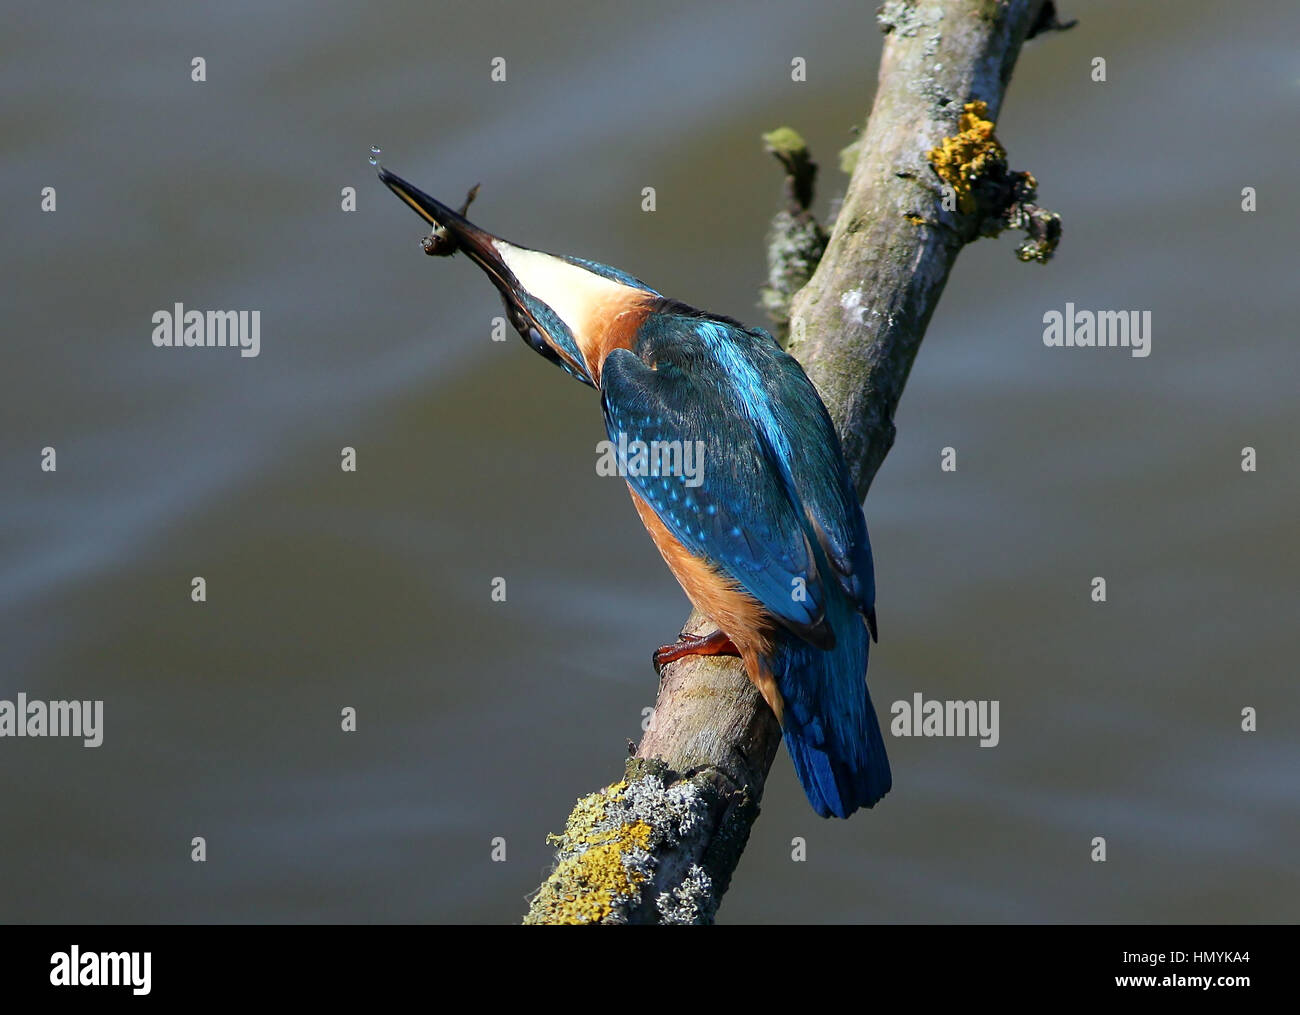 Europei maschili Kingfisher (Alcedo atthis) sbattendo un pesce pescato su un ramo Foto Stock